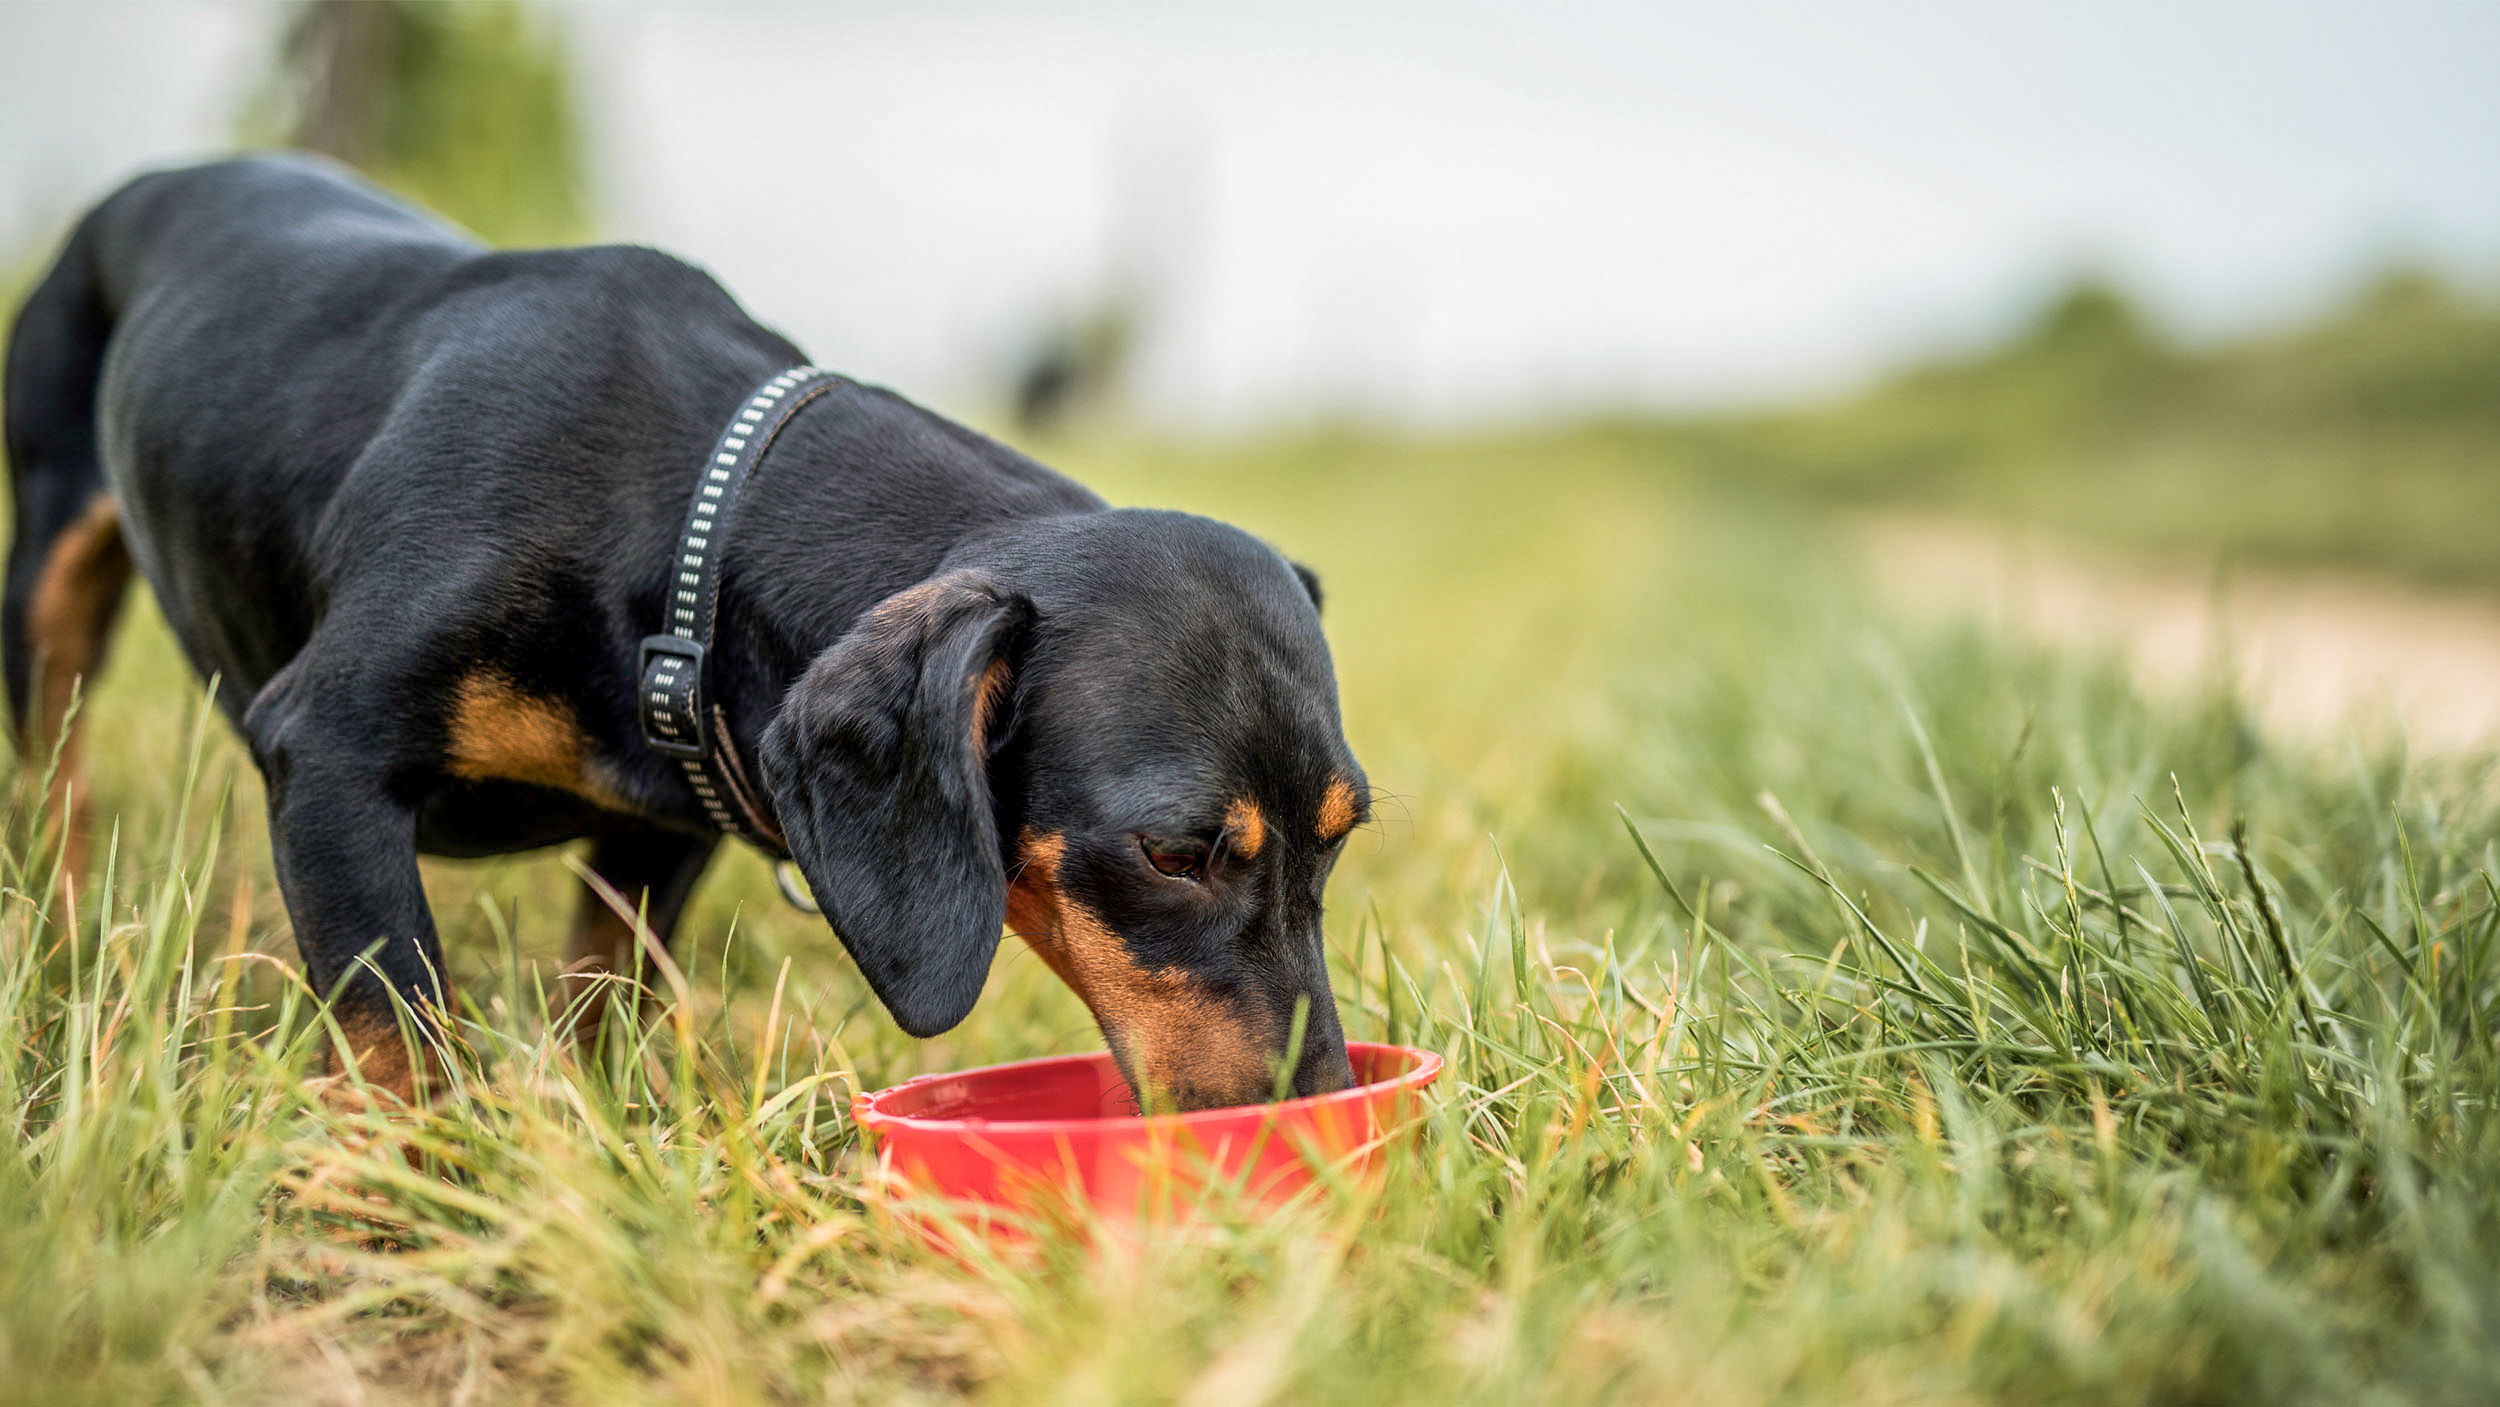 Cane adulto all'aperto mentre mangia da una ciotola rossa.